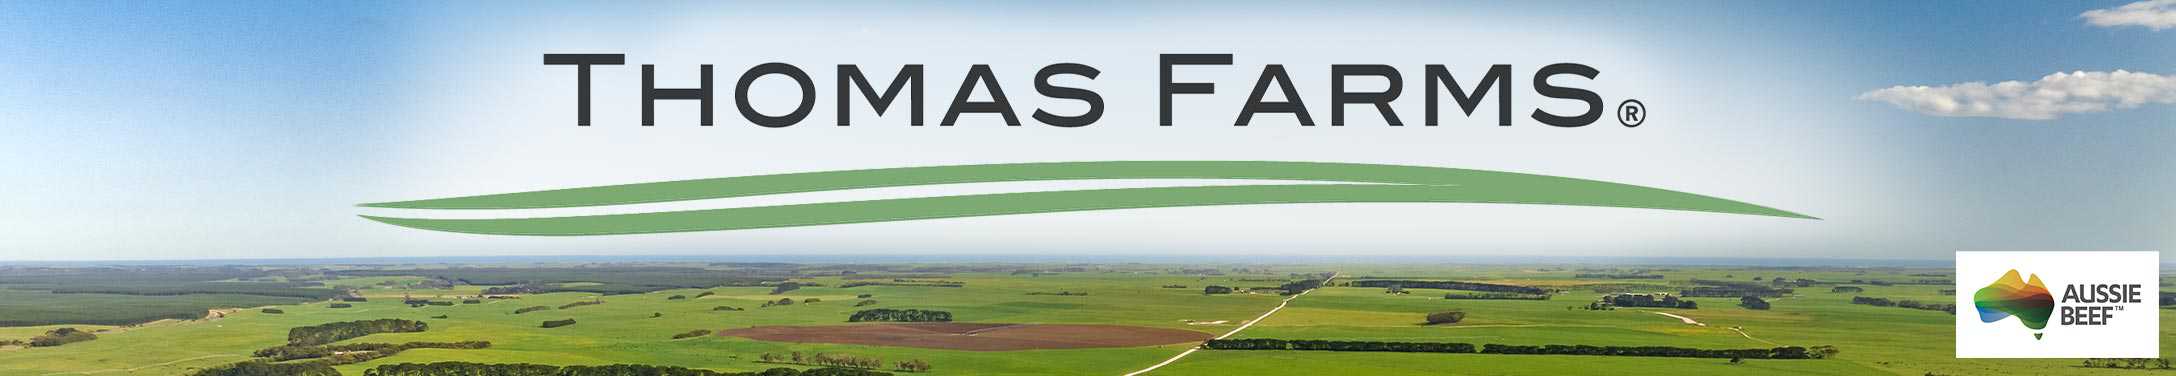 Thomas Farms logo and Aussie Beef logo above Australia farmland